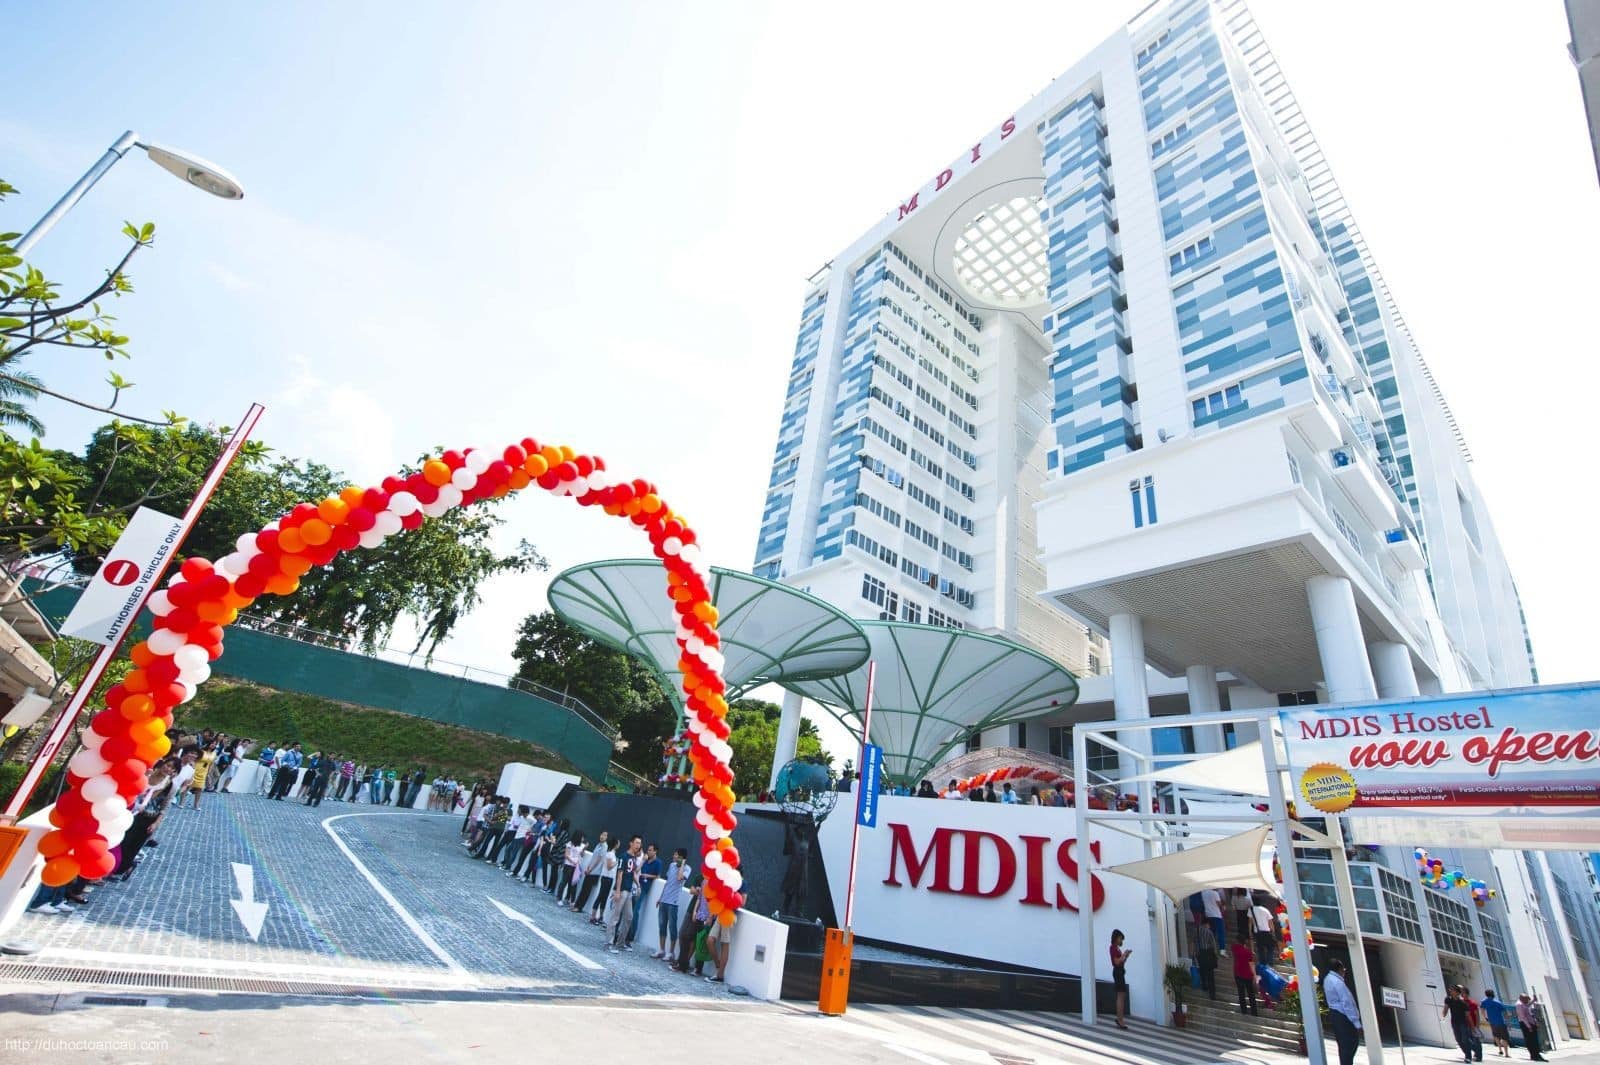 hoc vien mdis singapore - Trường MDIS có tốt không?